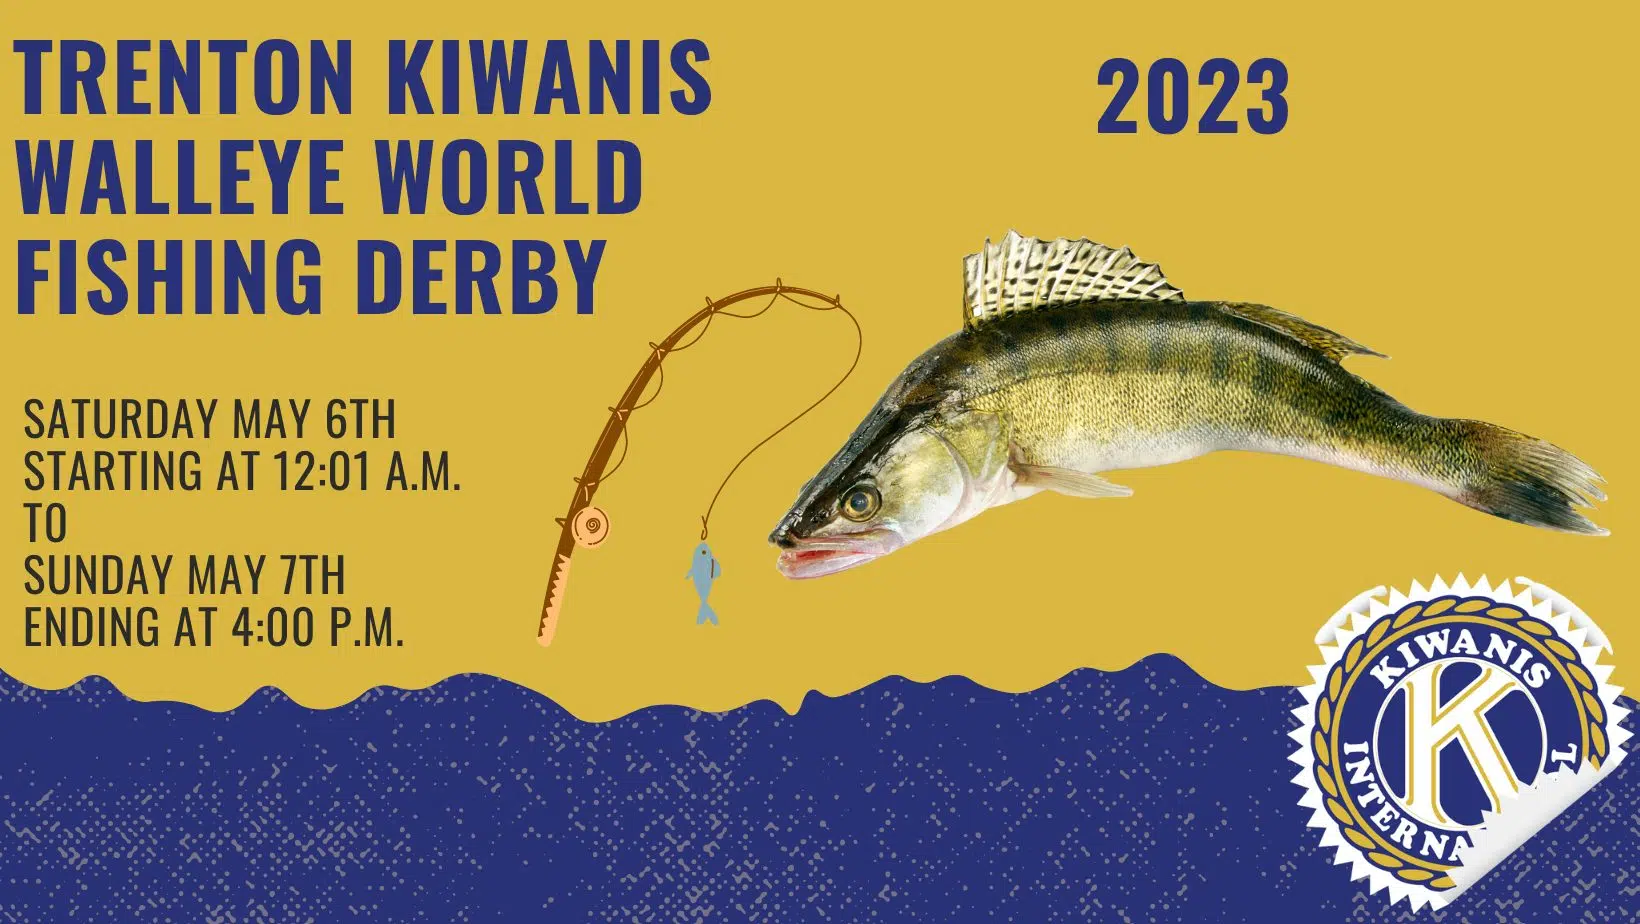 Walleye World fishing derby begins